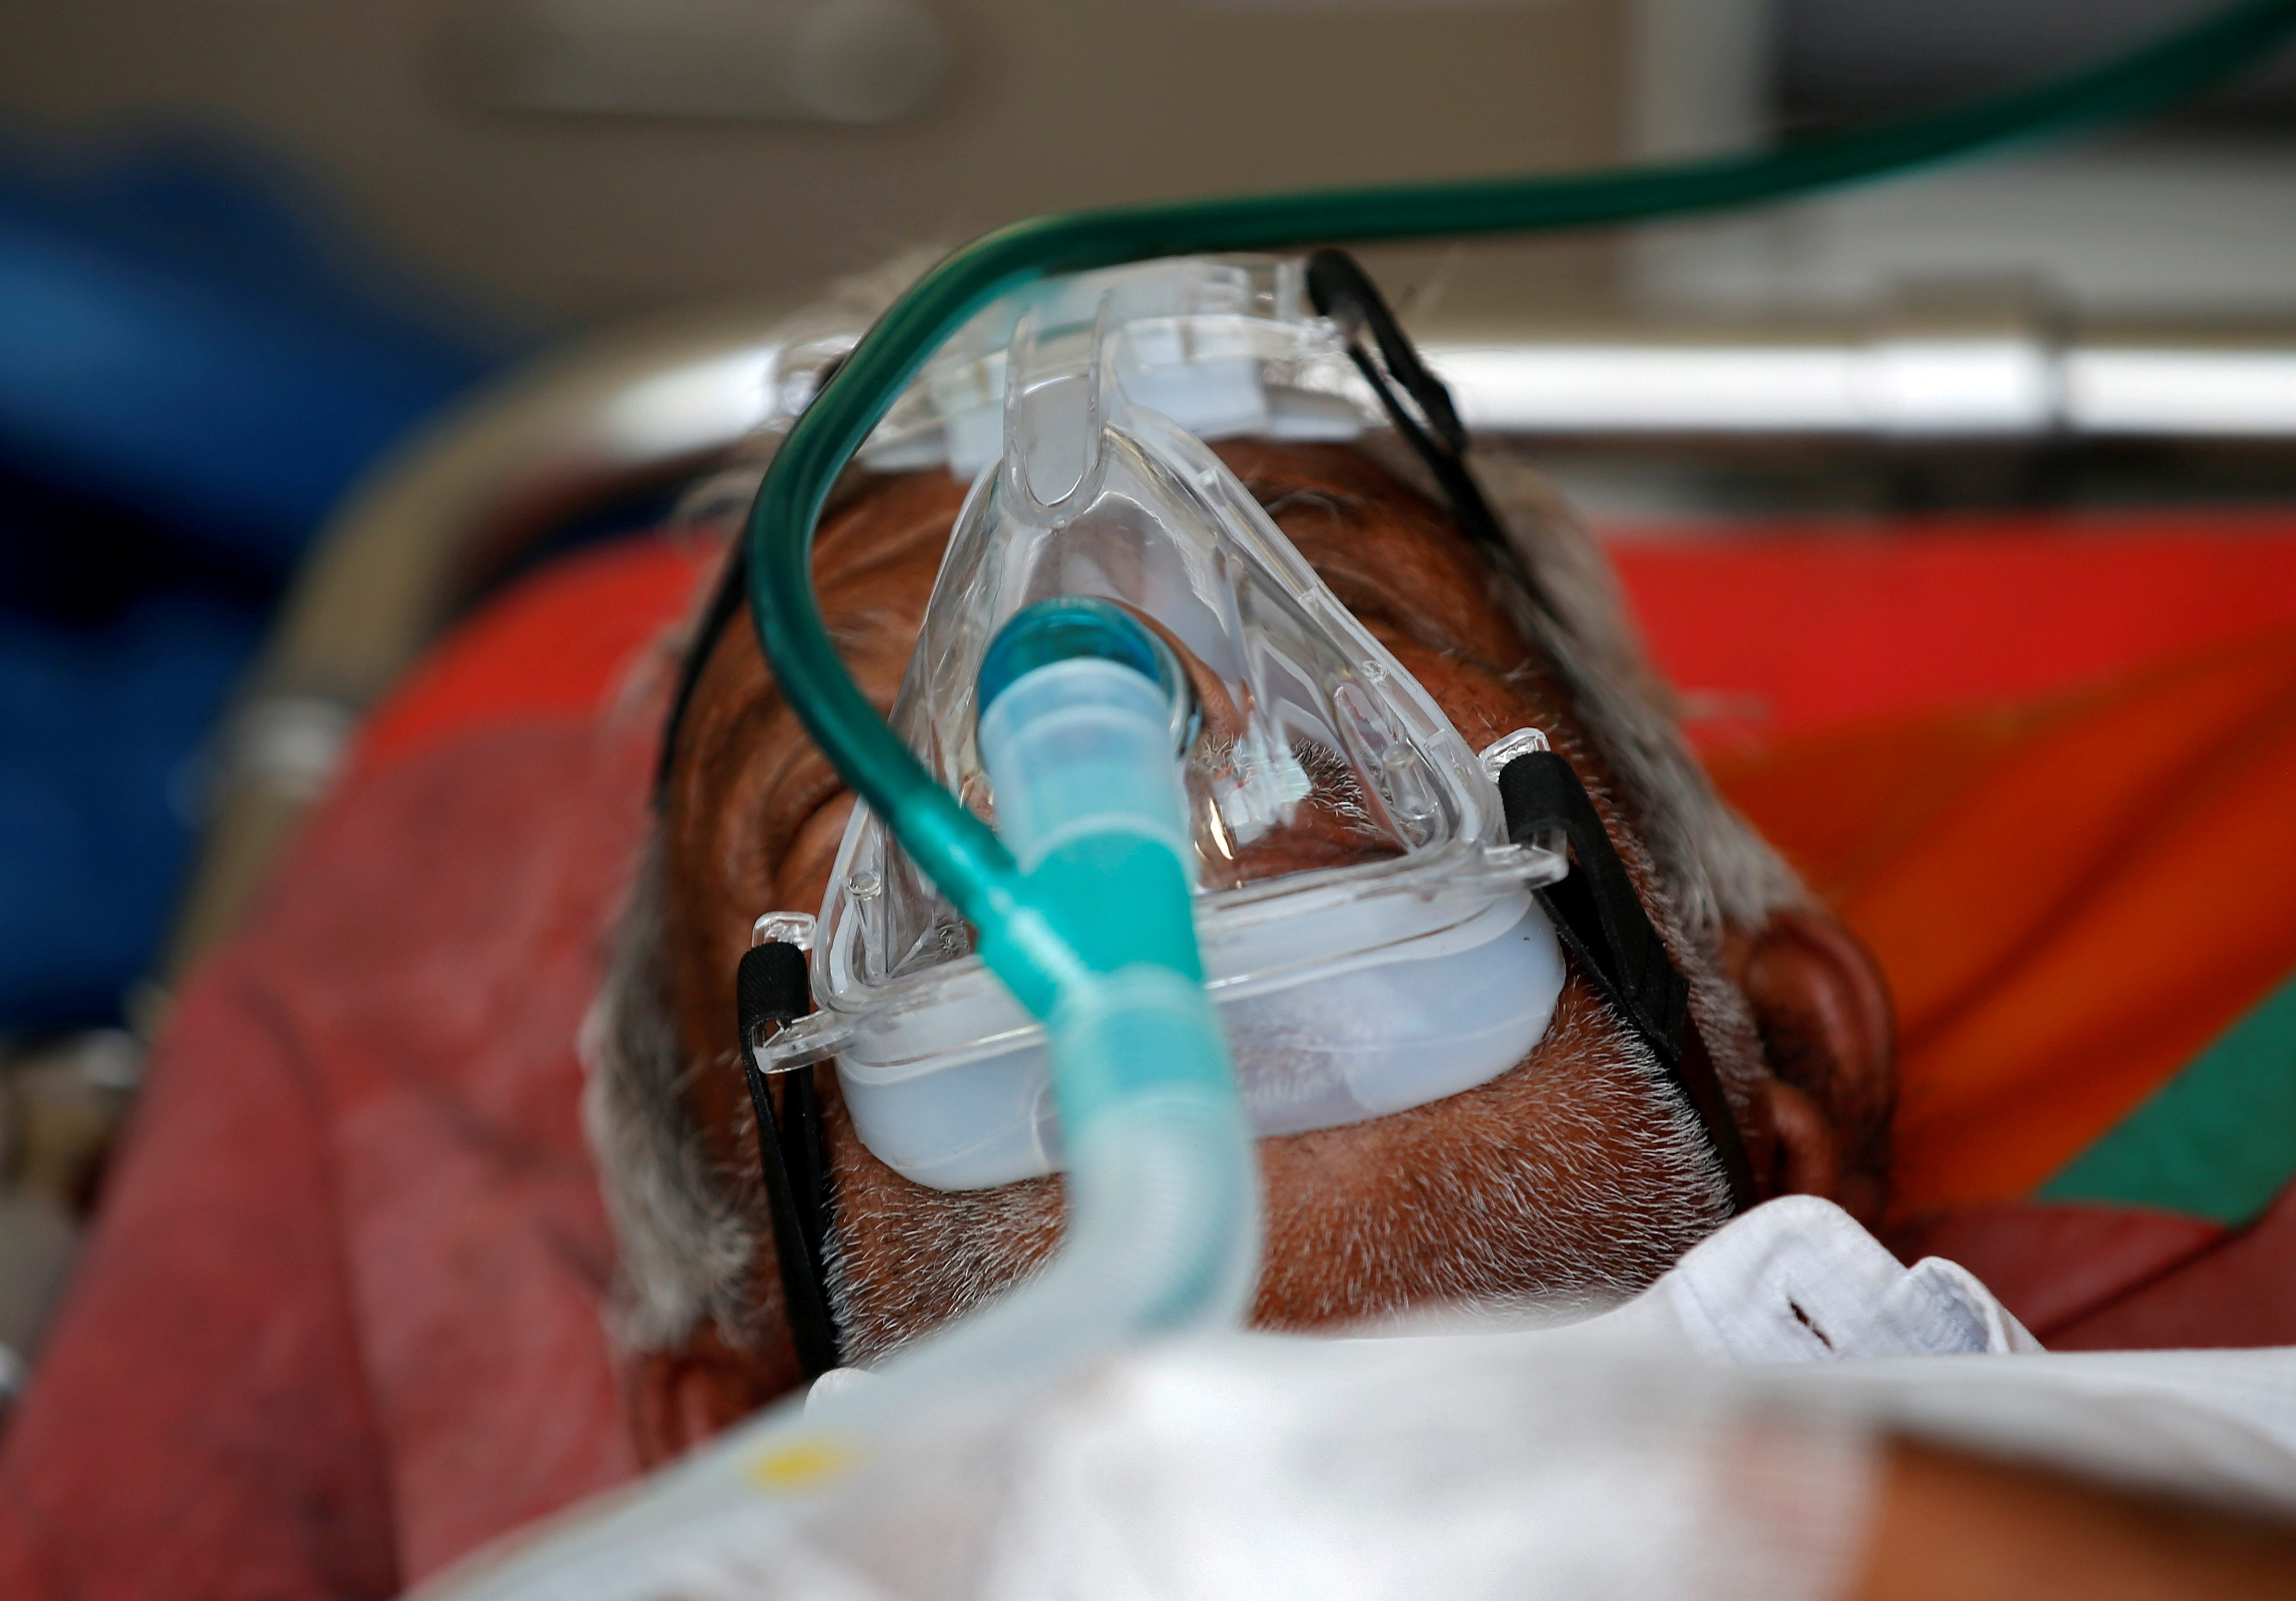 Medical supplies begin to reach India as COVID-19 deaths near 200,000